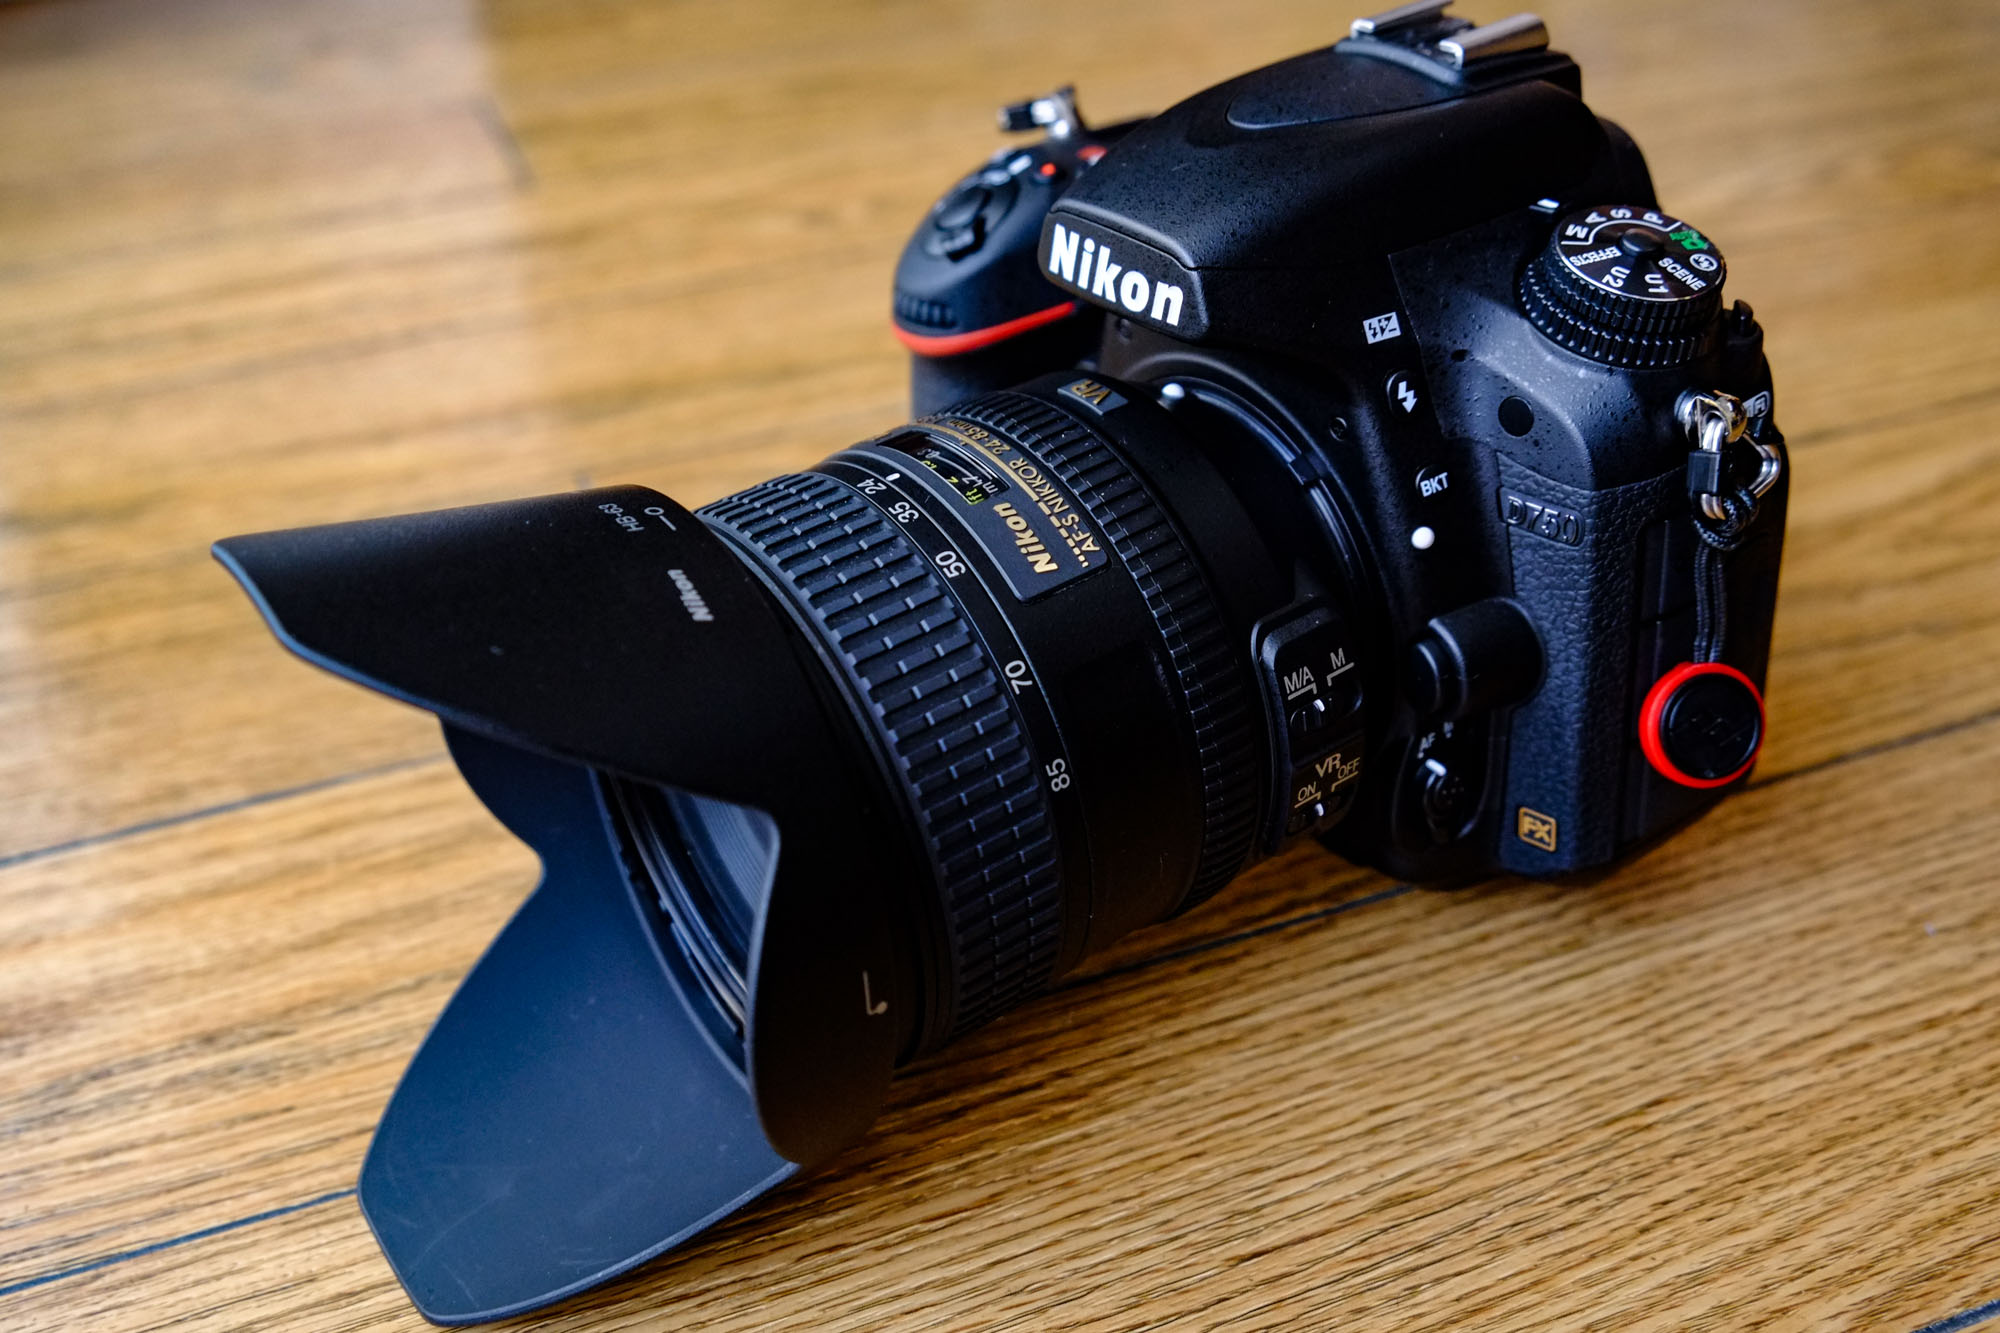 Nikon ニコン AF-S 24-85mm F3.5-4.5G VR レンズ 数々の賞を受賞